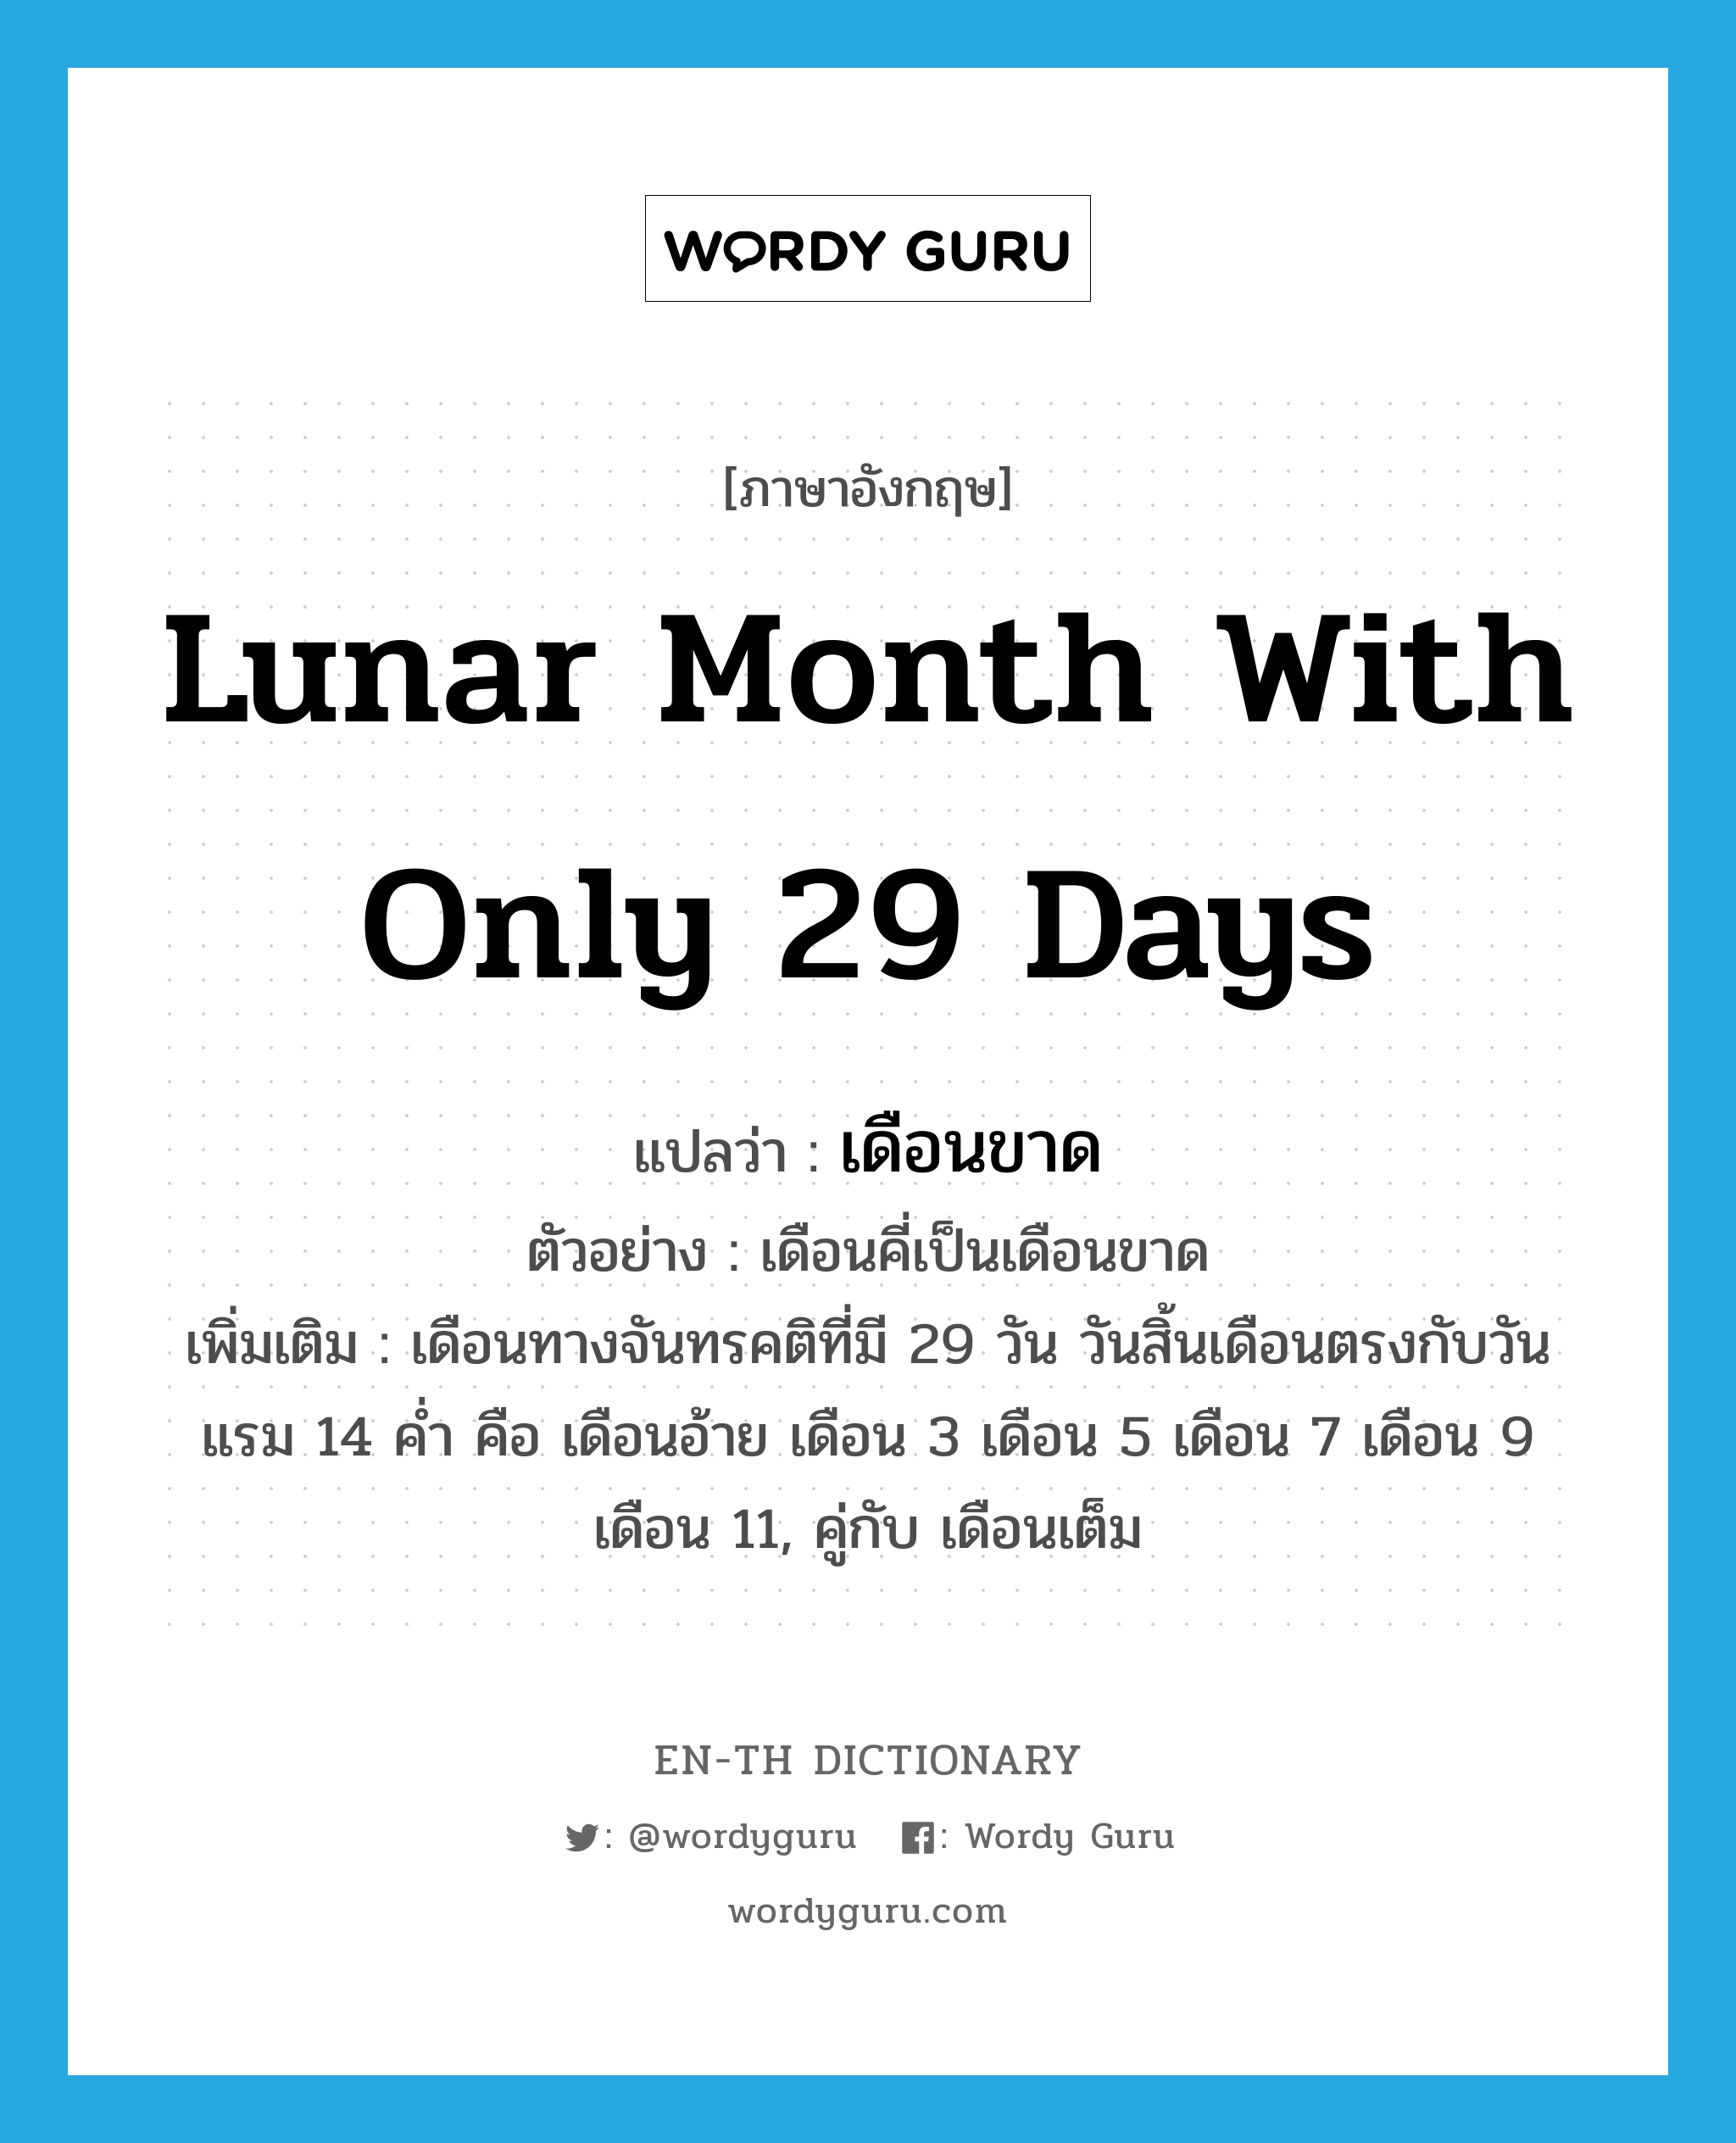 เดือนขาด ภาษาอังกฤษ?, คำศัพท์ภาษาอังกฤษ เดือนขาด แปลว่า lunar month with only 29 days ประเภท N ตัวอย่าง เดือนคี่เป็นเดือนขาด เพิ่มเติม เดือนทางจันทรคติที่มี 29 วัน วันสิ้นเดือนตรงกับวันแรม 14 ค่ำ คือ เดือนอ้าย เดือน 3 เดือน 5 เดือน 7 เดือน 9 เดือน 11, คู่กับ เดือนเต็ม หมวด N